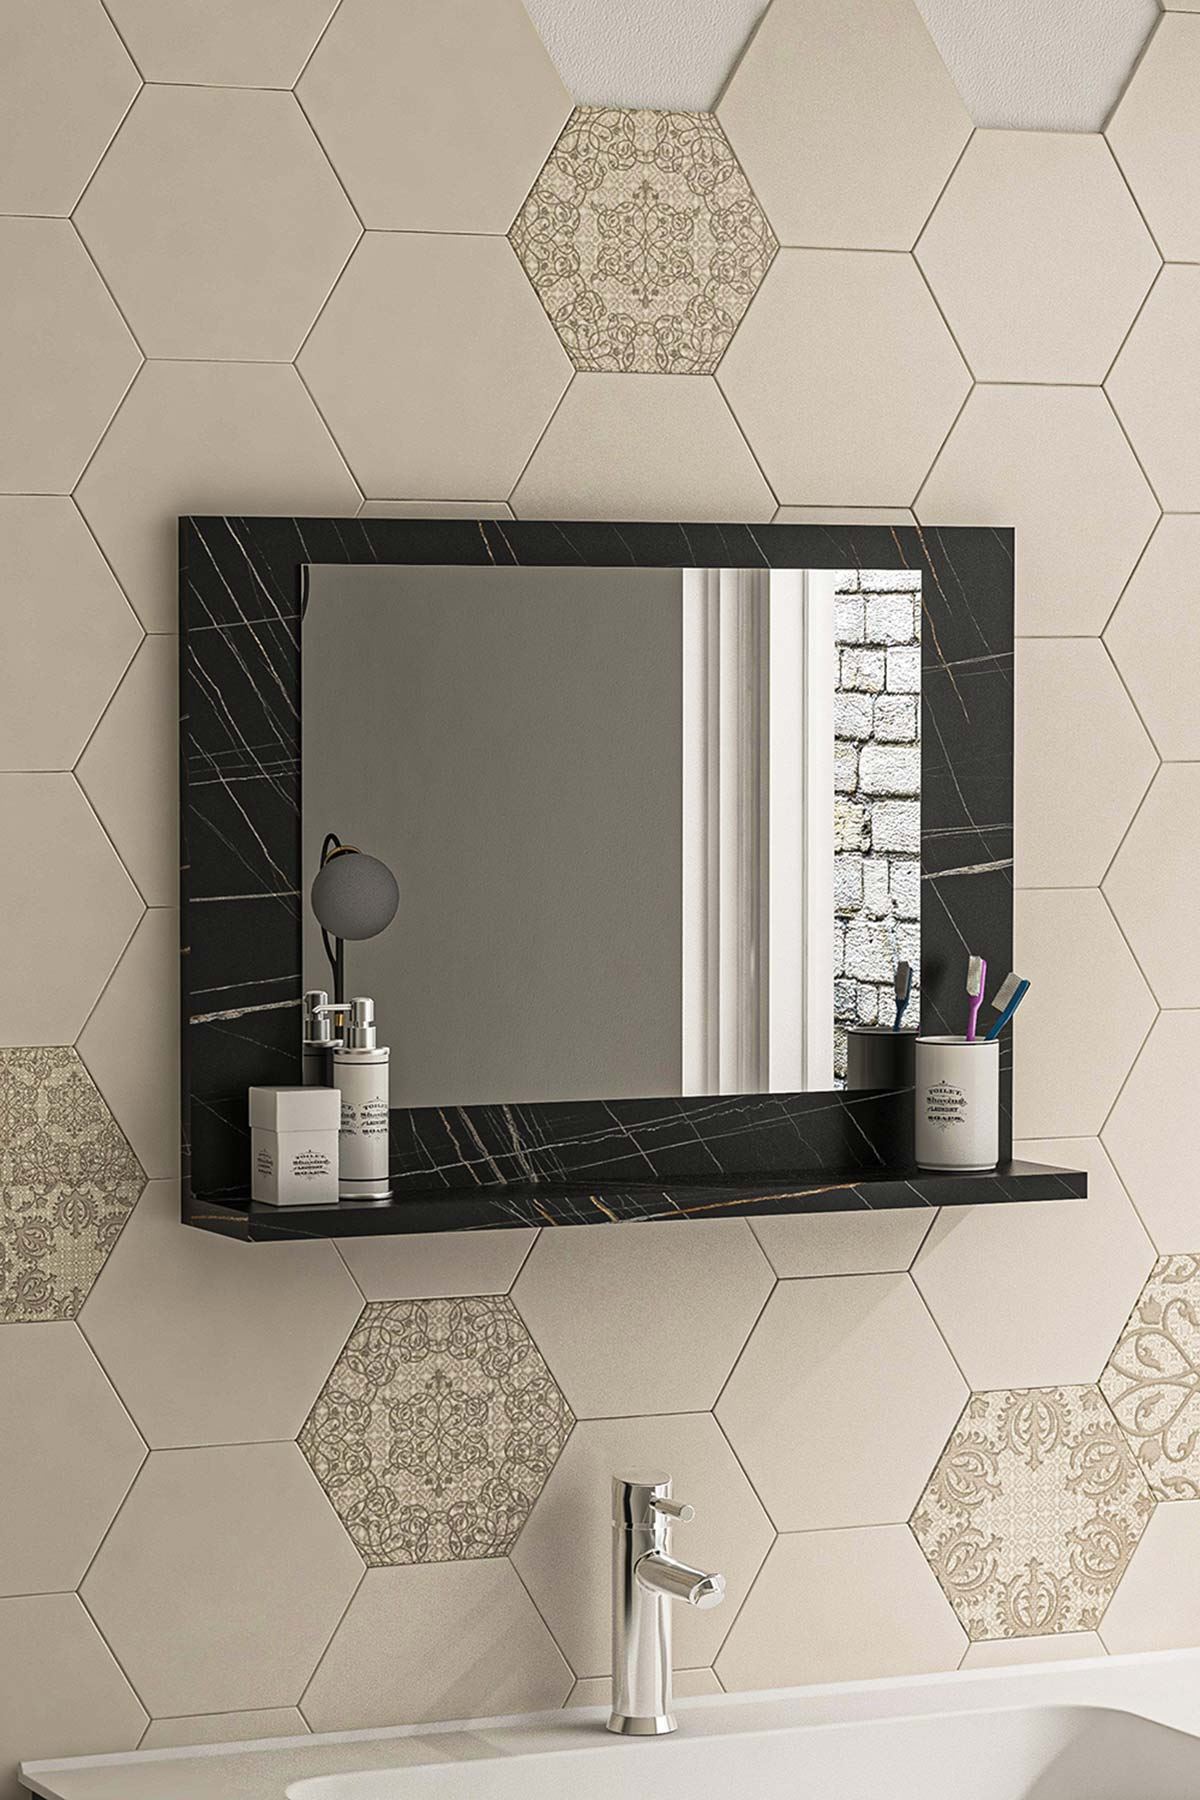 Bofigo 60x45 Cm Modena Banyo Rafı Lavabo Rafı Aynalı Raf Banyo Aynası Bendir